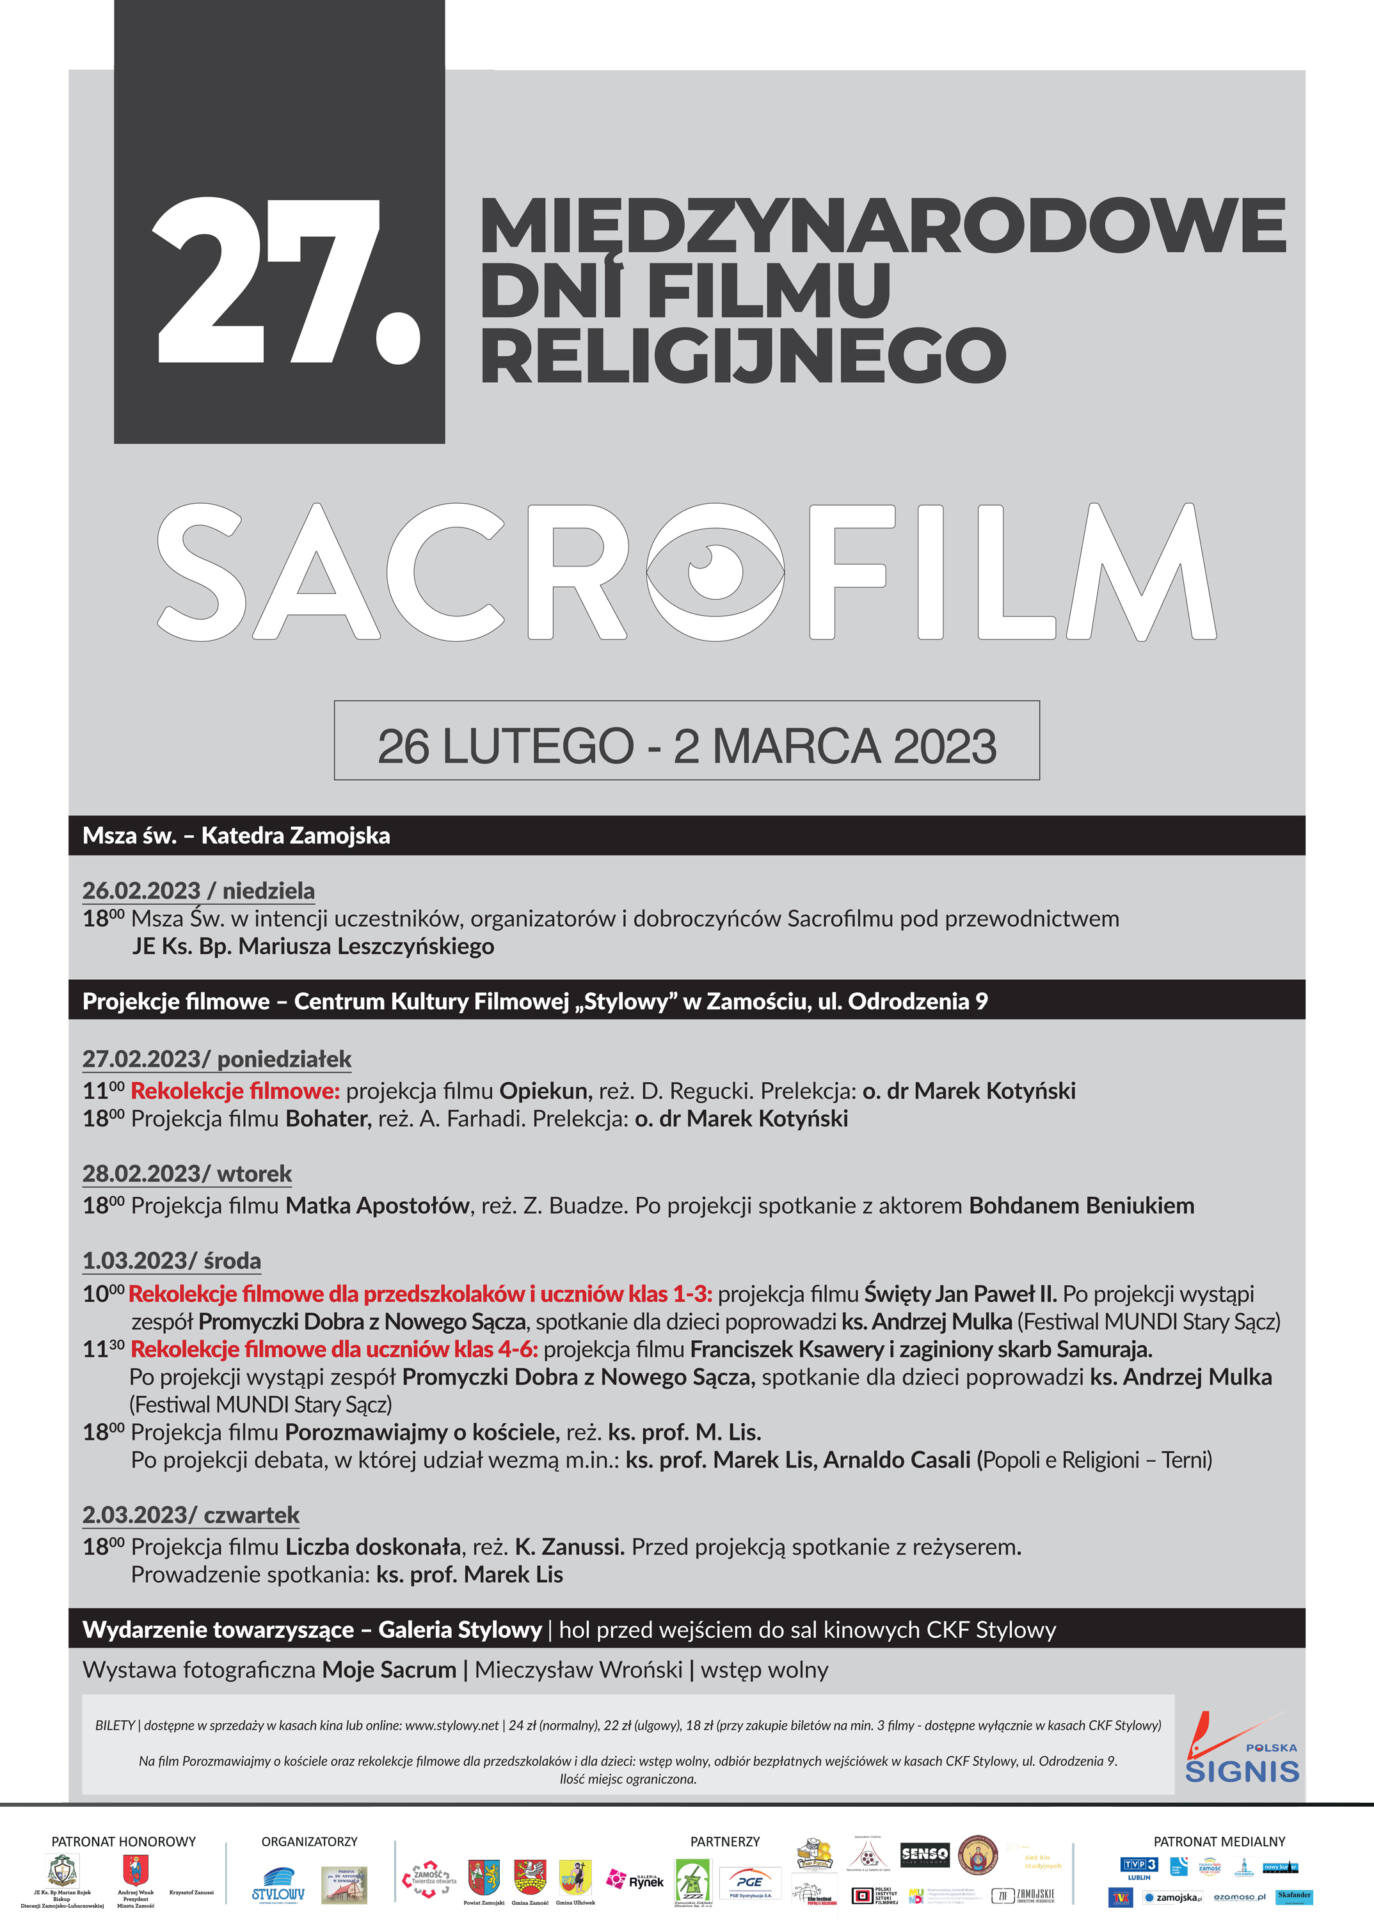 afisz 27. Międzynarodowe Dni Filmu Religijnego "Sacrofilm" (Publikujemy program)